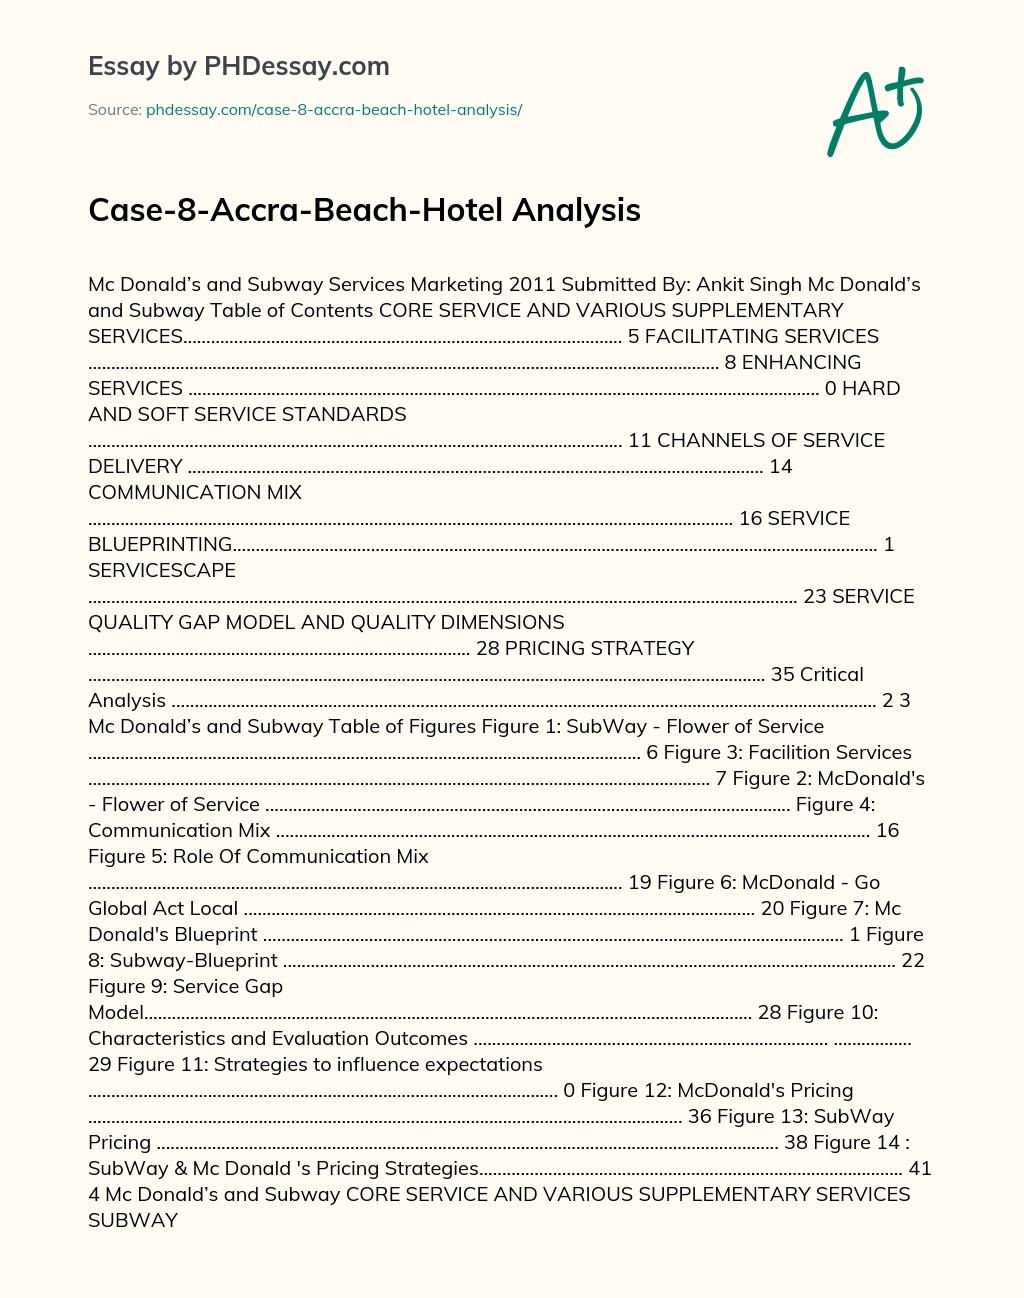 Case-8-Accra-Beach-Hotel Analysis essay